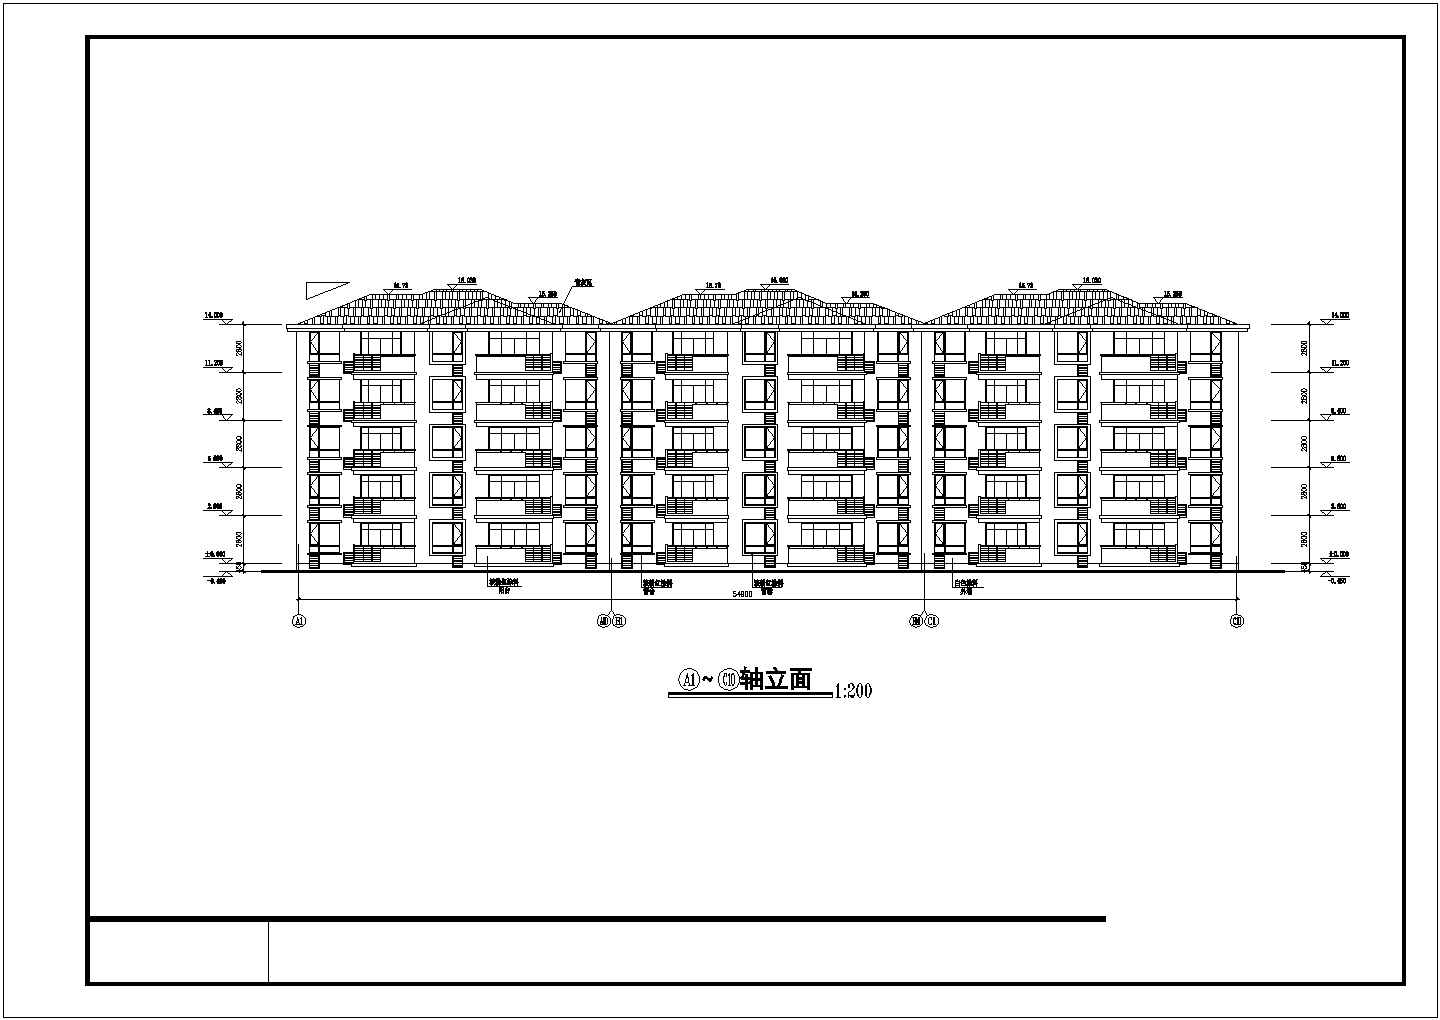 五层三单元不对称户型住宅楼全套设计图纸(单元内的两户型不对称、单元跟单元间对称)